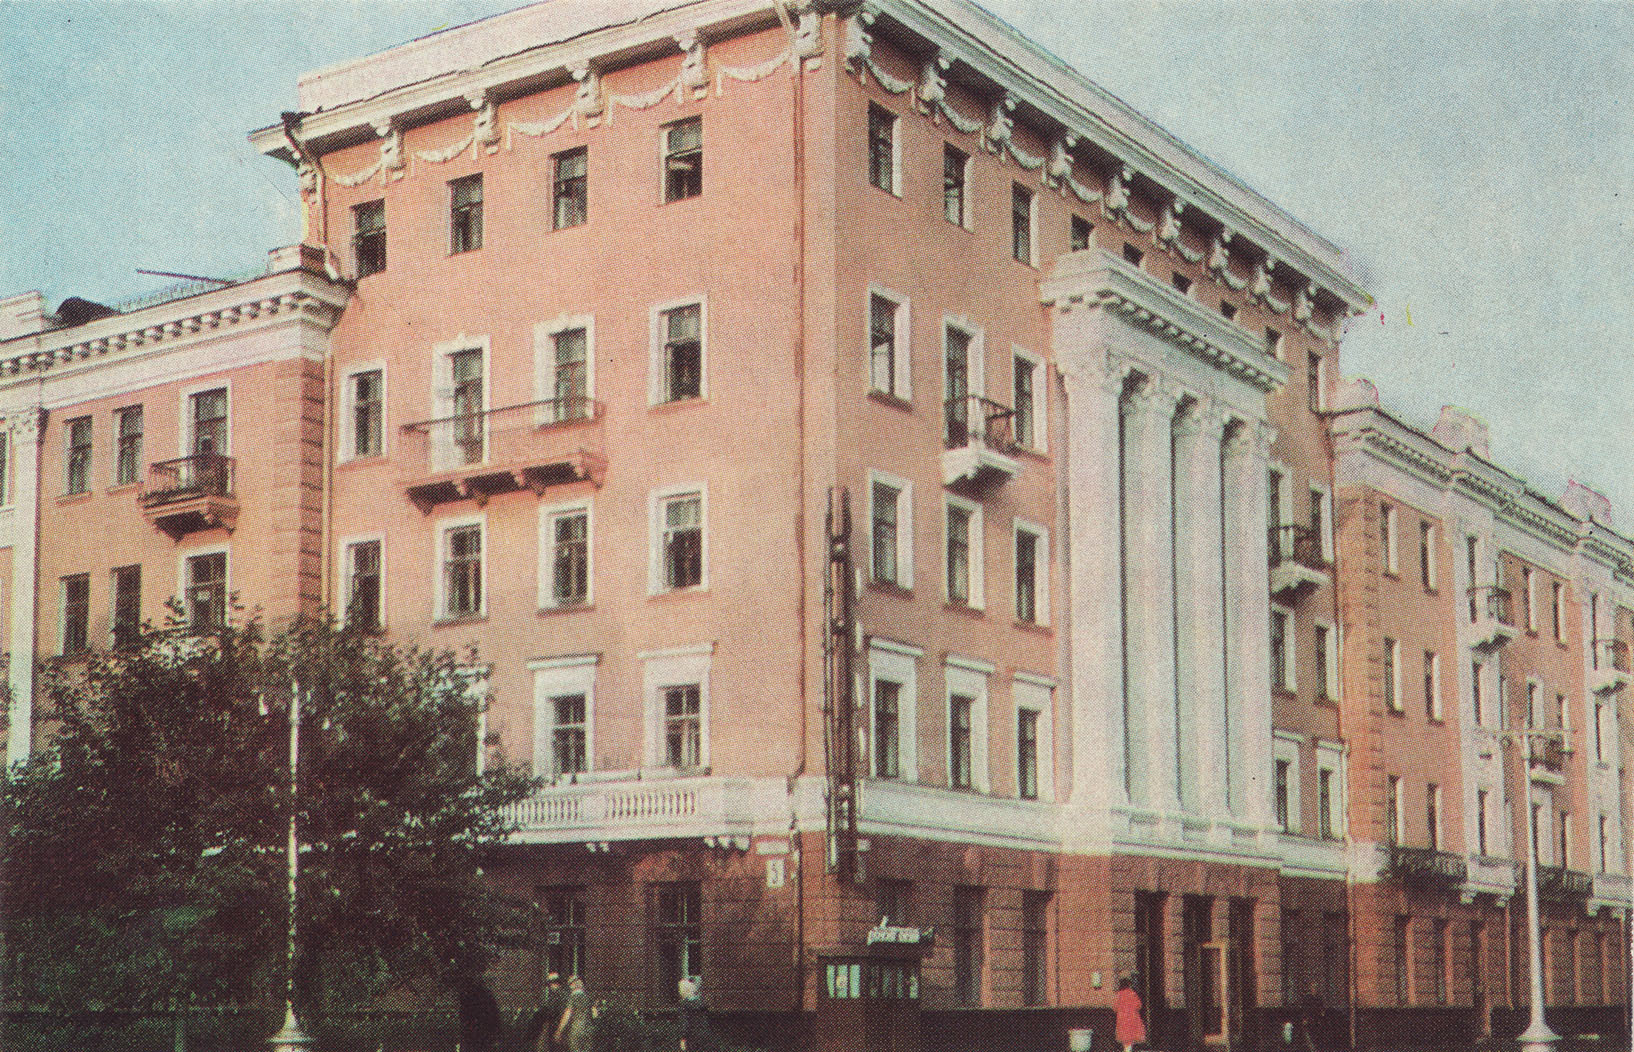 Гостиница «Север» на Ленина, 121. Здесь изменились только вывески и цвет фасада